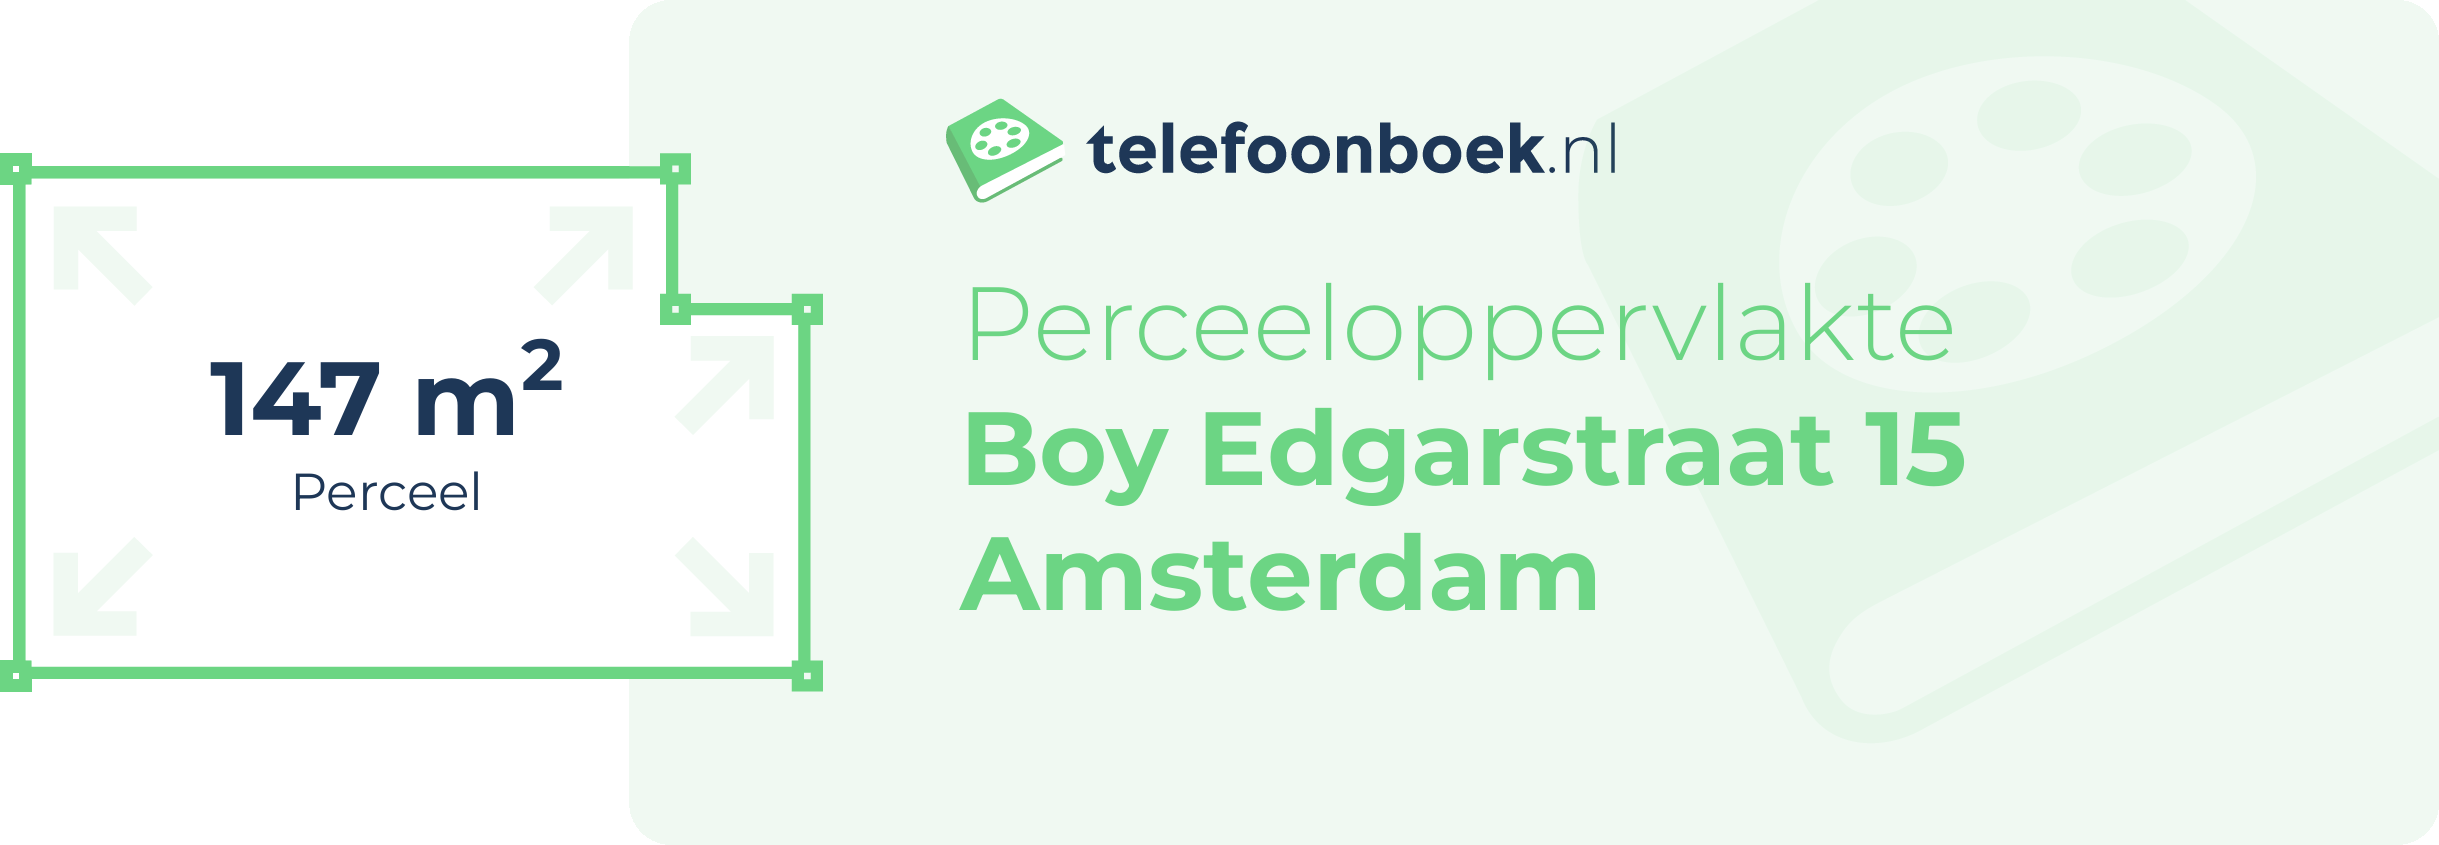 Perceeloppervlakte Boy Edgarstraat 15 Amsterdam